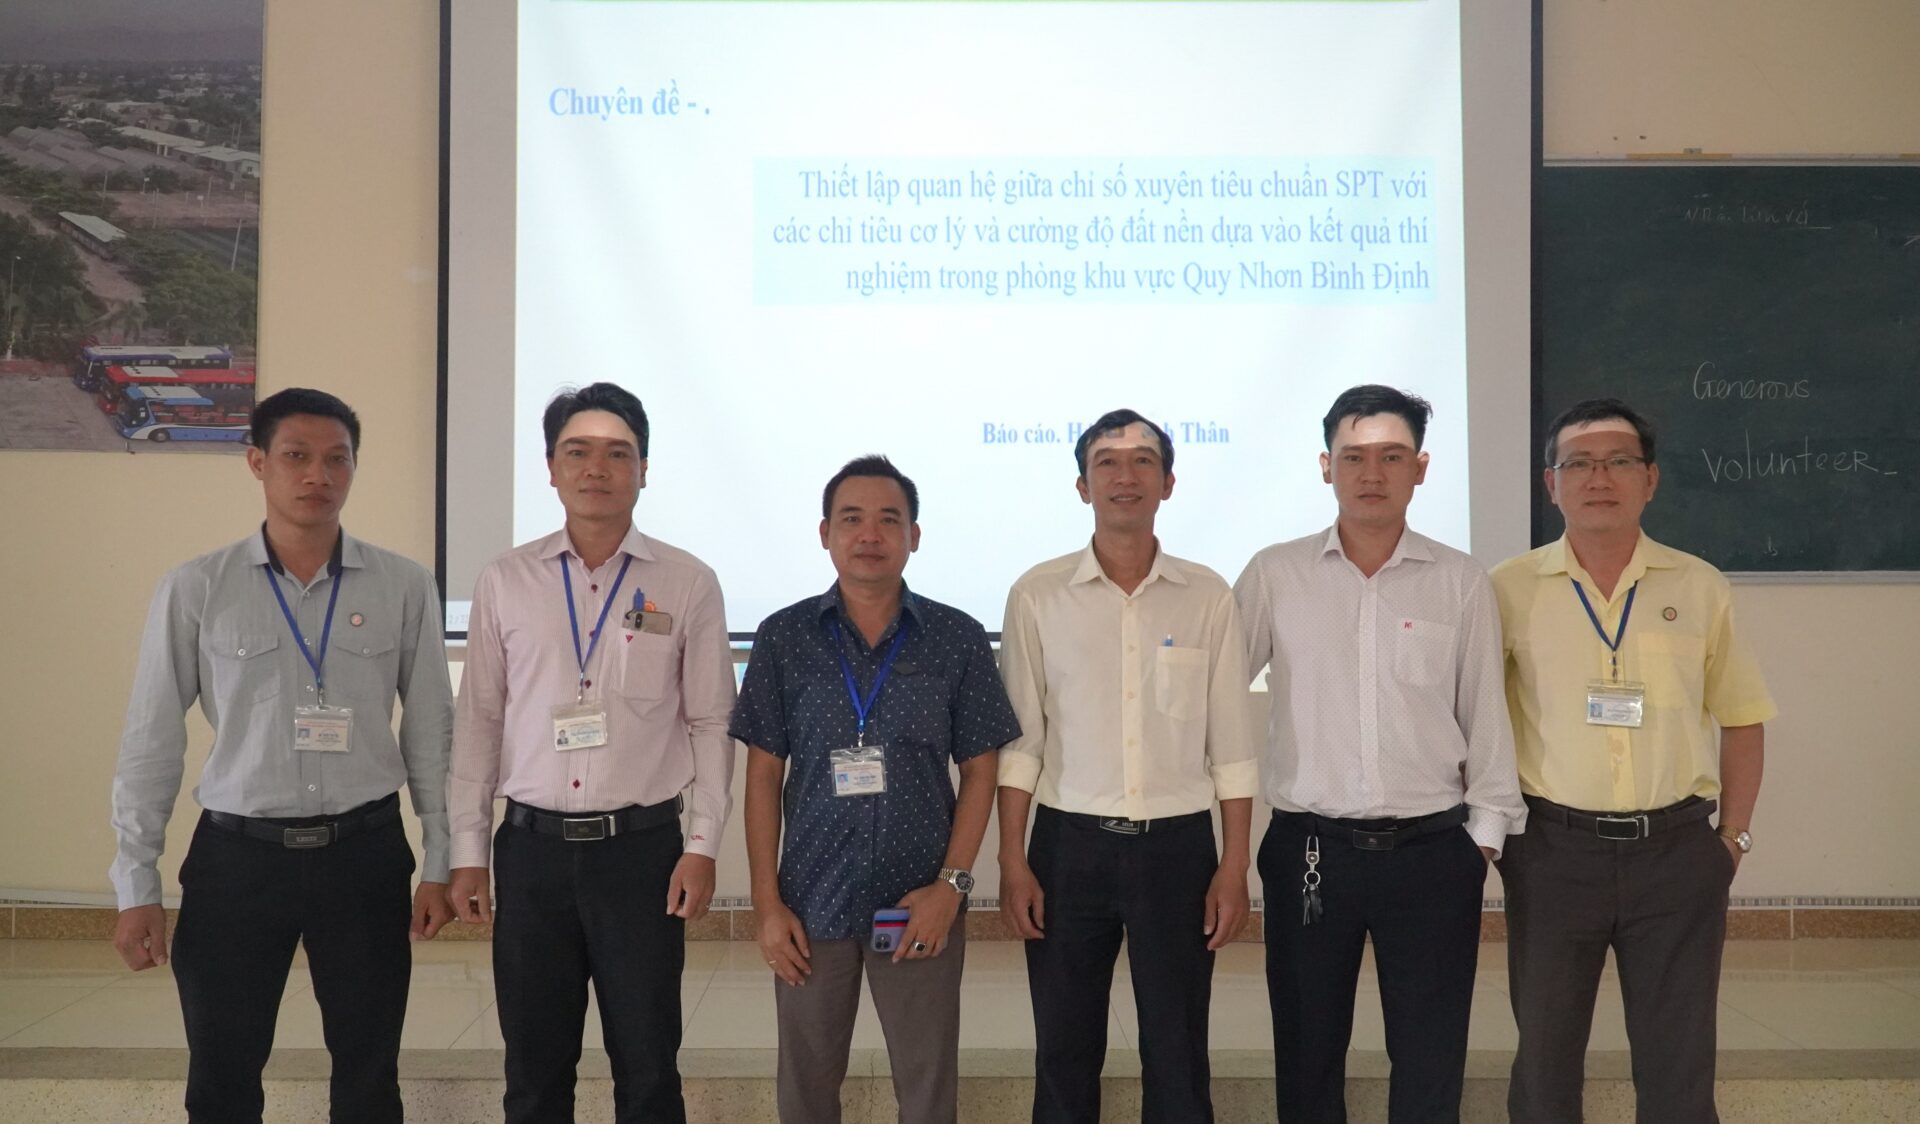 Khoa Kỹ thuật Công nghệ - Trường Đại học Quang Trung tổ chức Seminar học thuật "Thiết lập quan hệ giữa chỉ số xuyên tiêu chuẩn SPT với các chỉ tiêu cơ lý và cường độ đất nền dựa vào kết quả thí nghiệm trong phòng khu vực Quy Nhơn Bình Định"